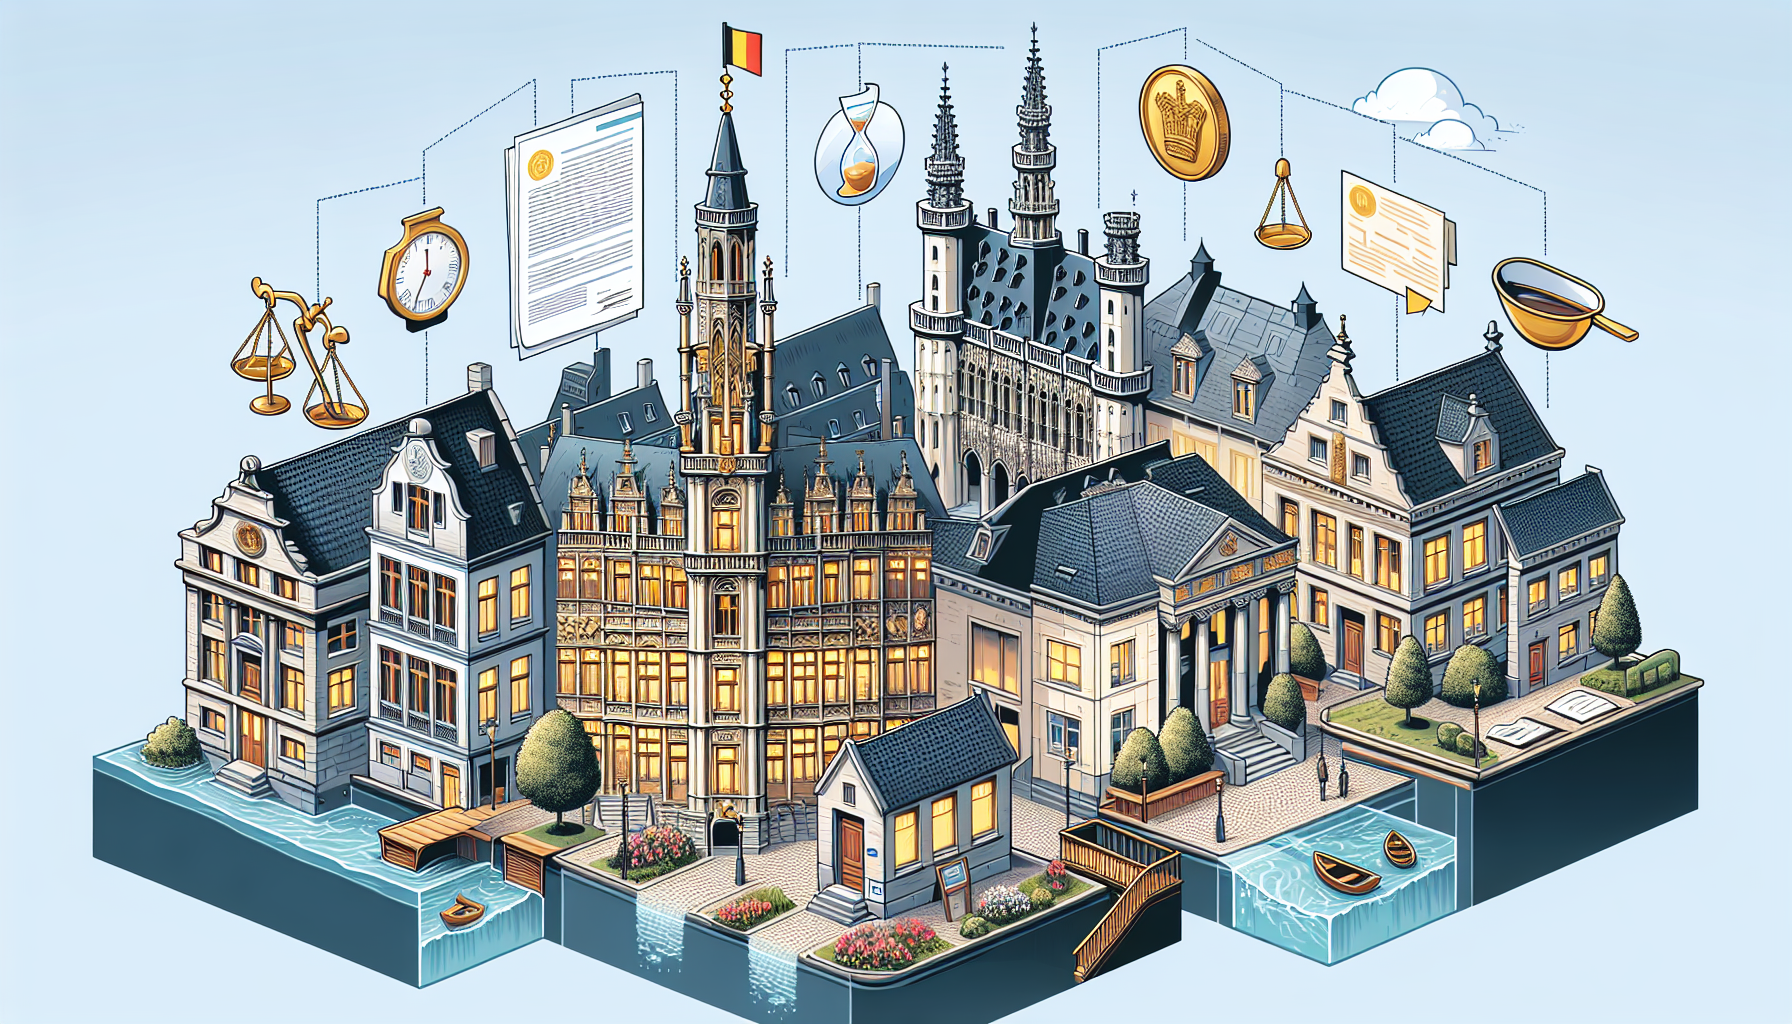 découvrez comment la procédure de déshéritage fonctionne en belgique et les différentes étapes à suivre pour y parvenir.